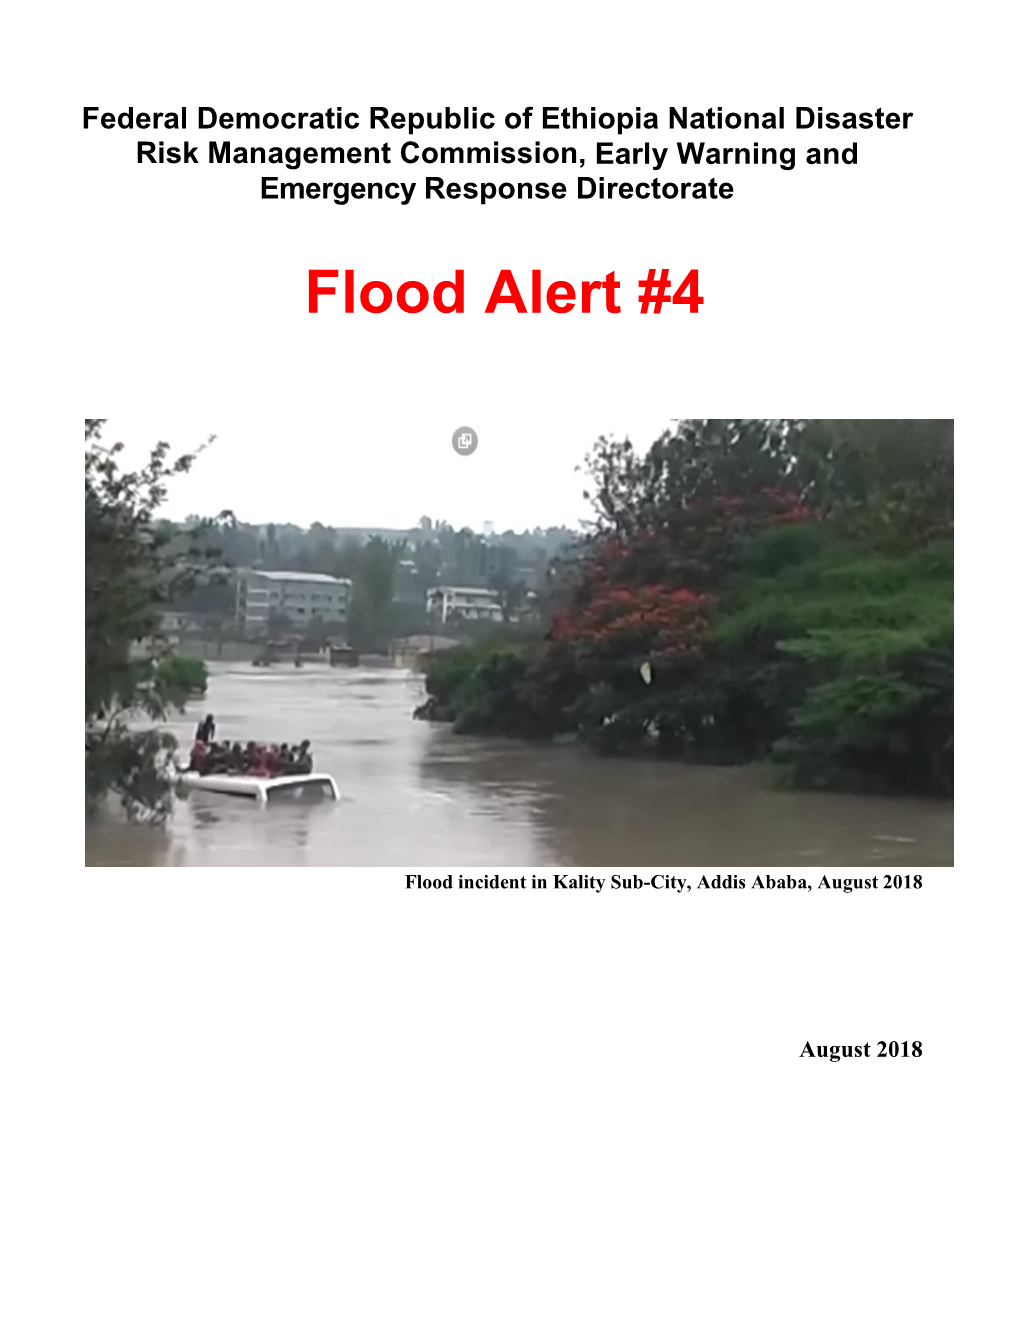 Flood Alert #4